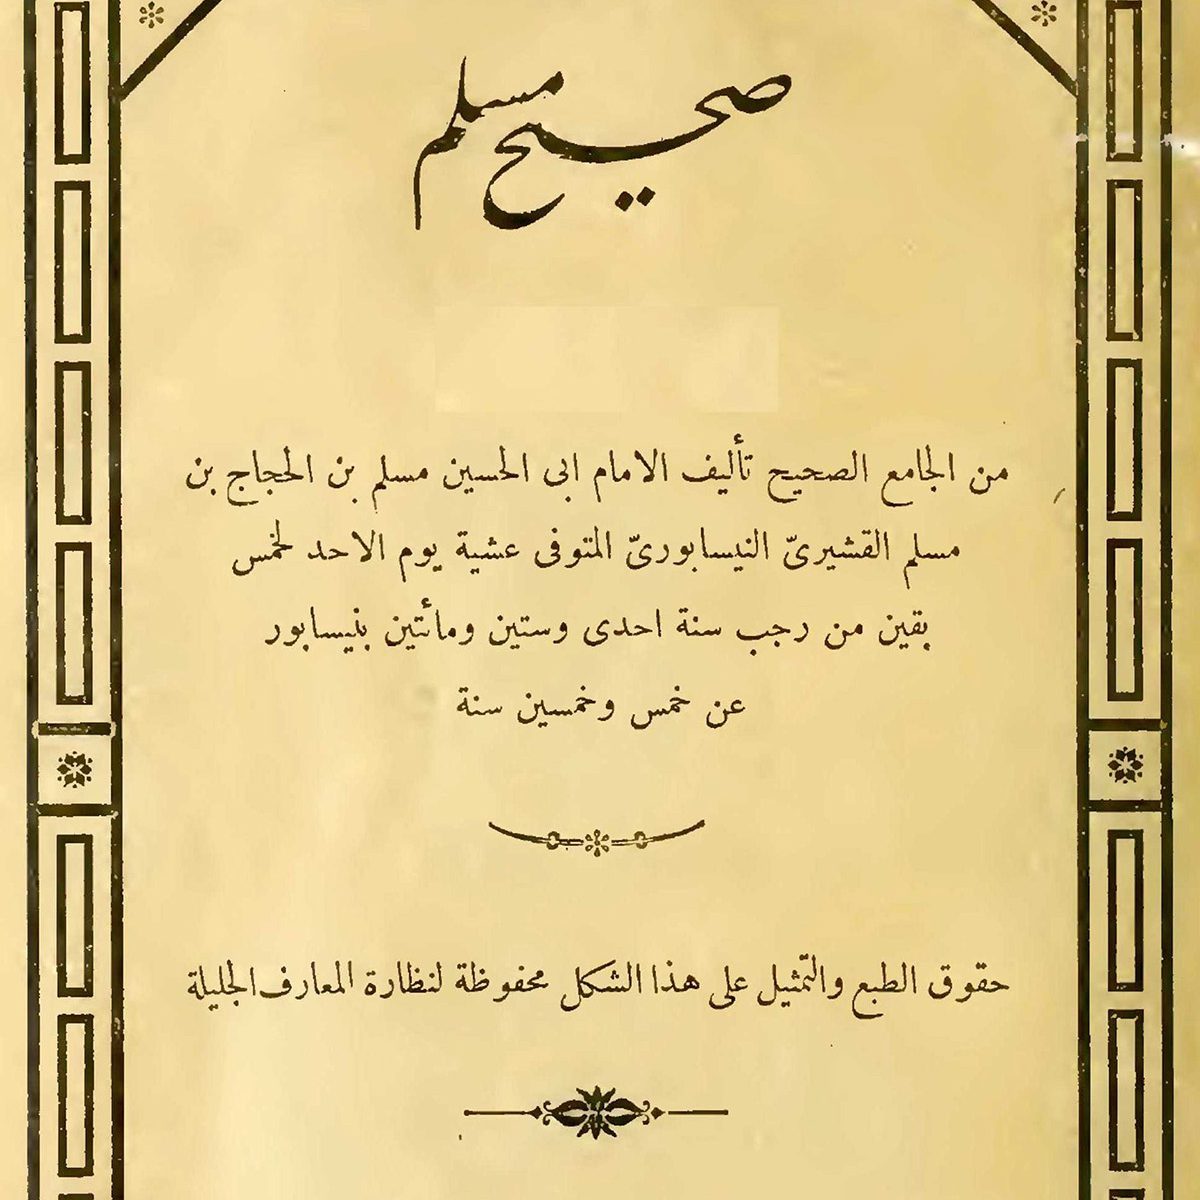 Commentaire du hadith dans l'islam sunnite, 9ème Siècle